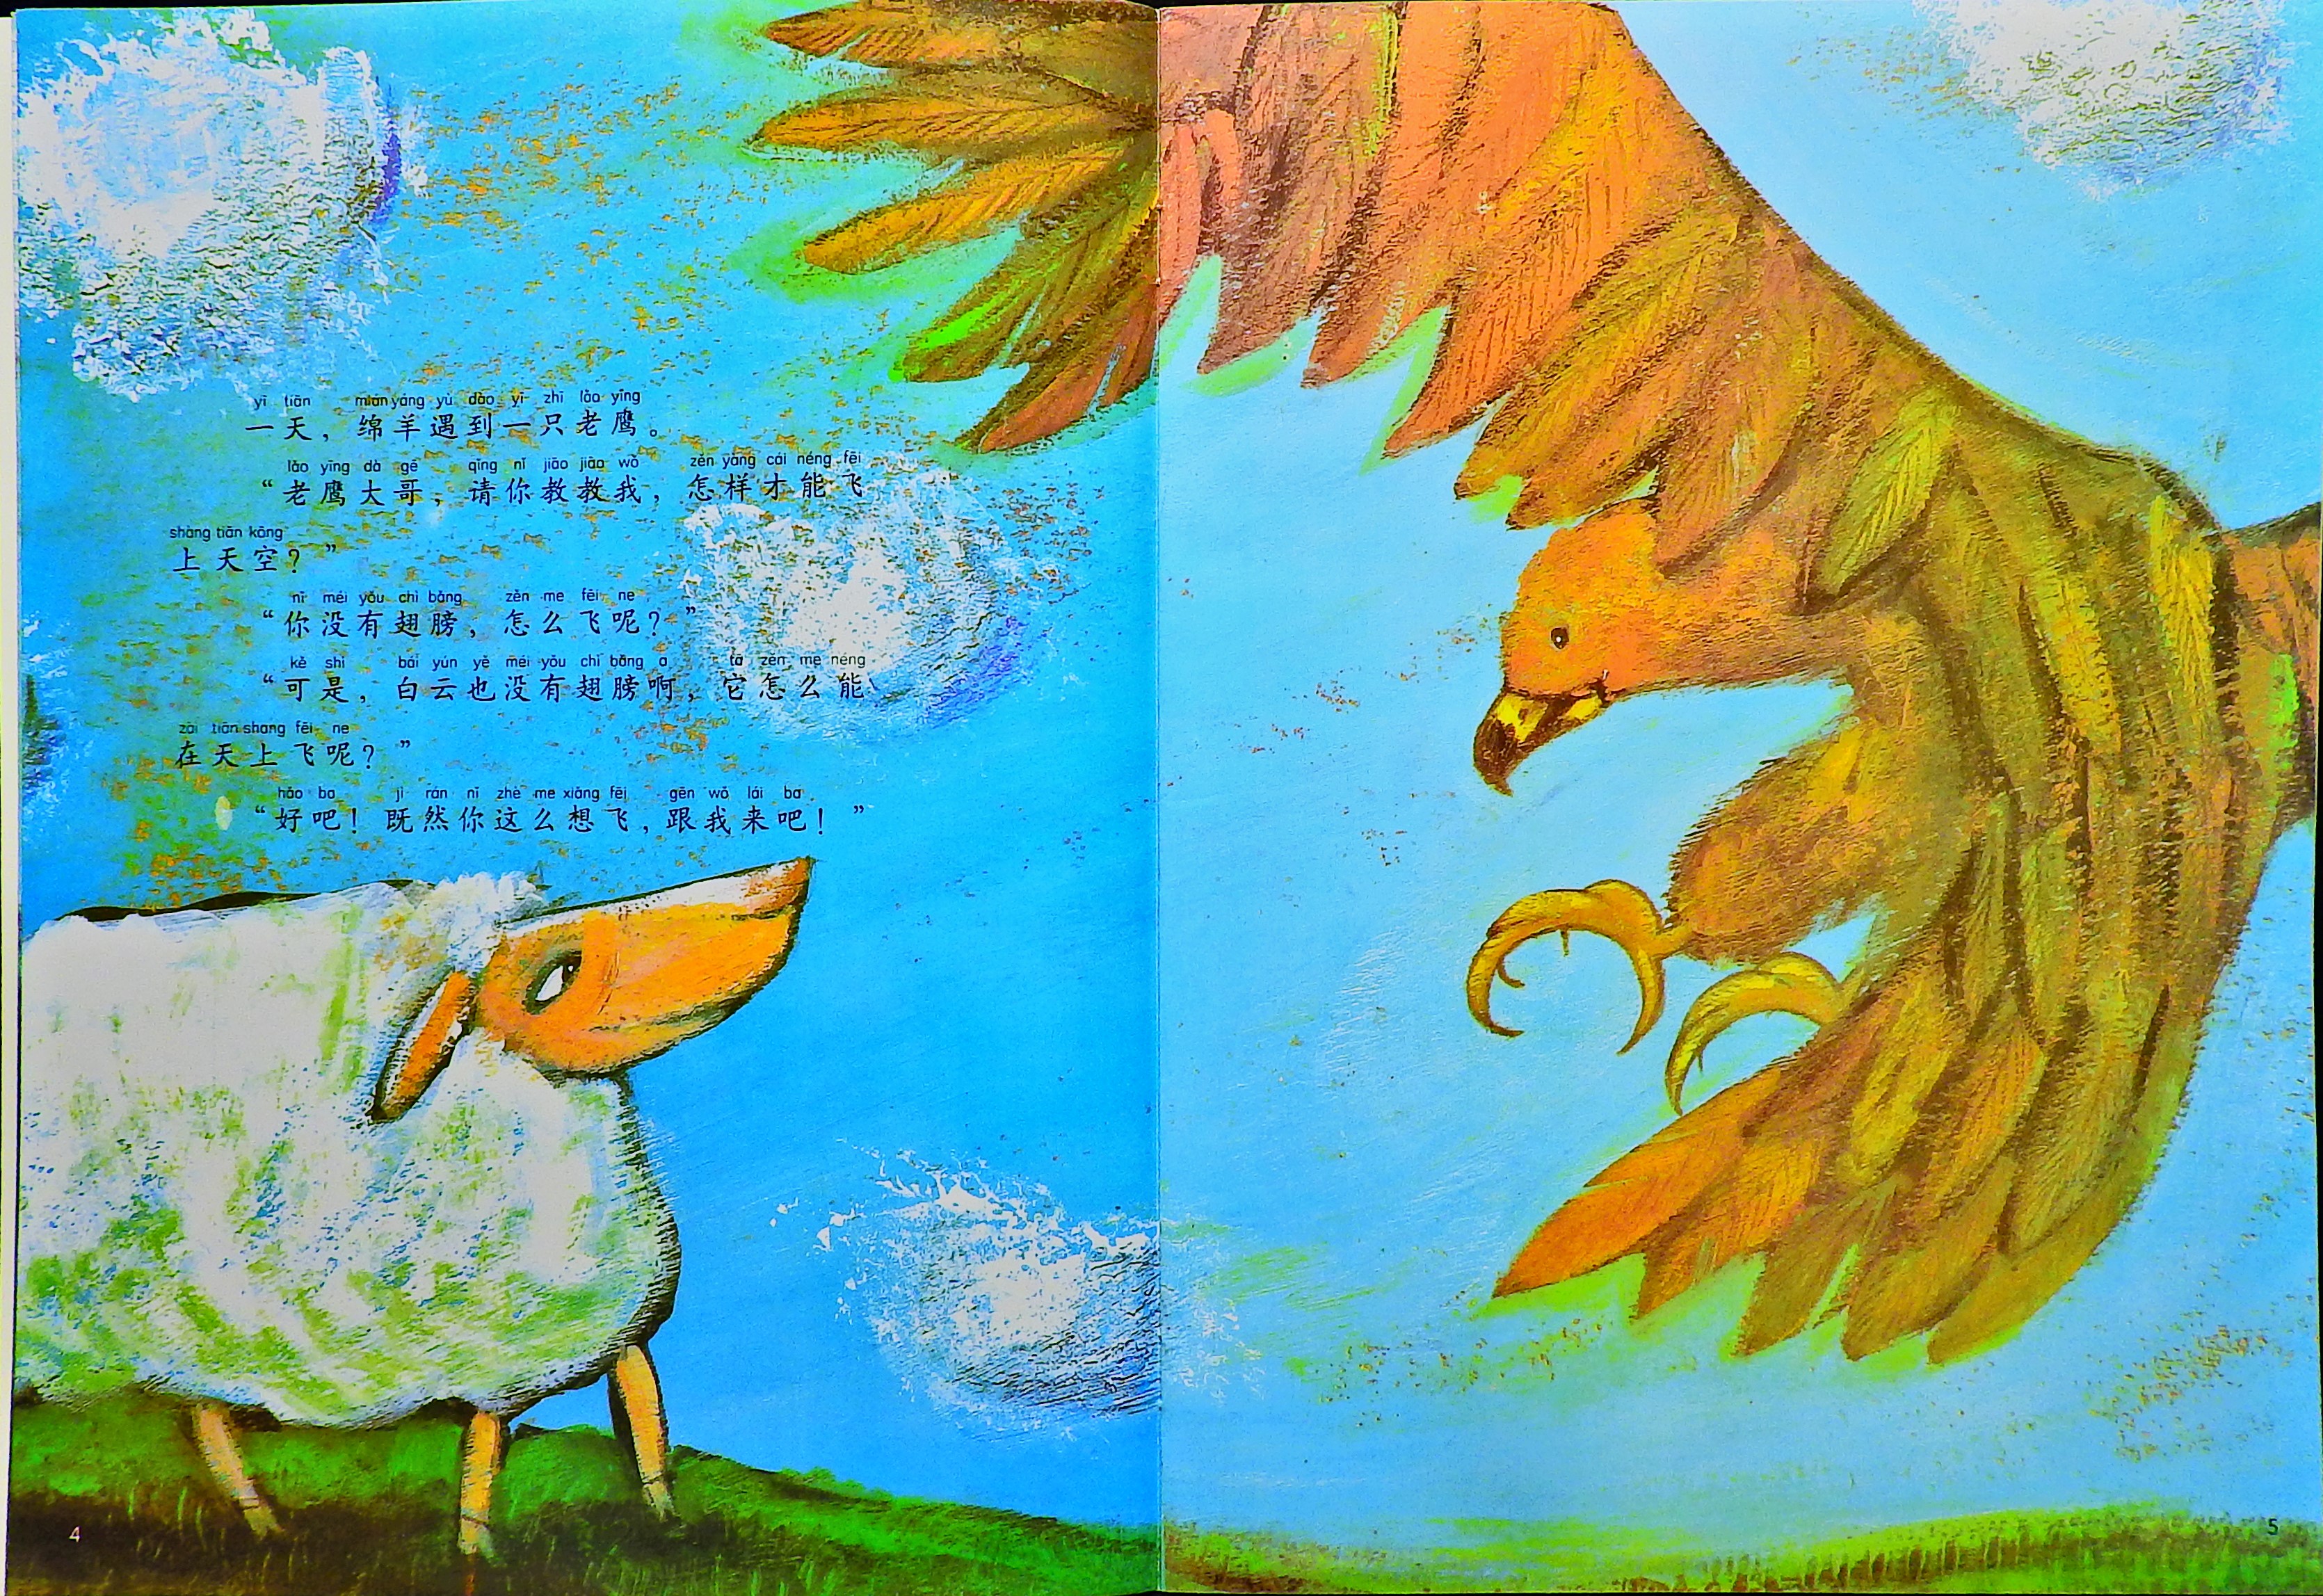 飞上天空的绵羊 (04),绘本,绘本故事,绘本阅读,故事书,童书,图画书,课外阅读